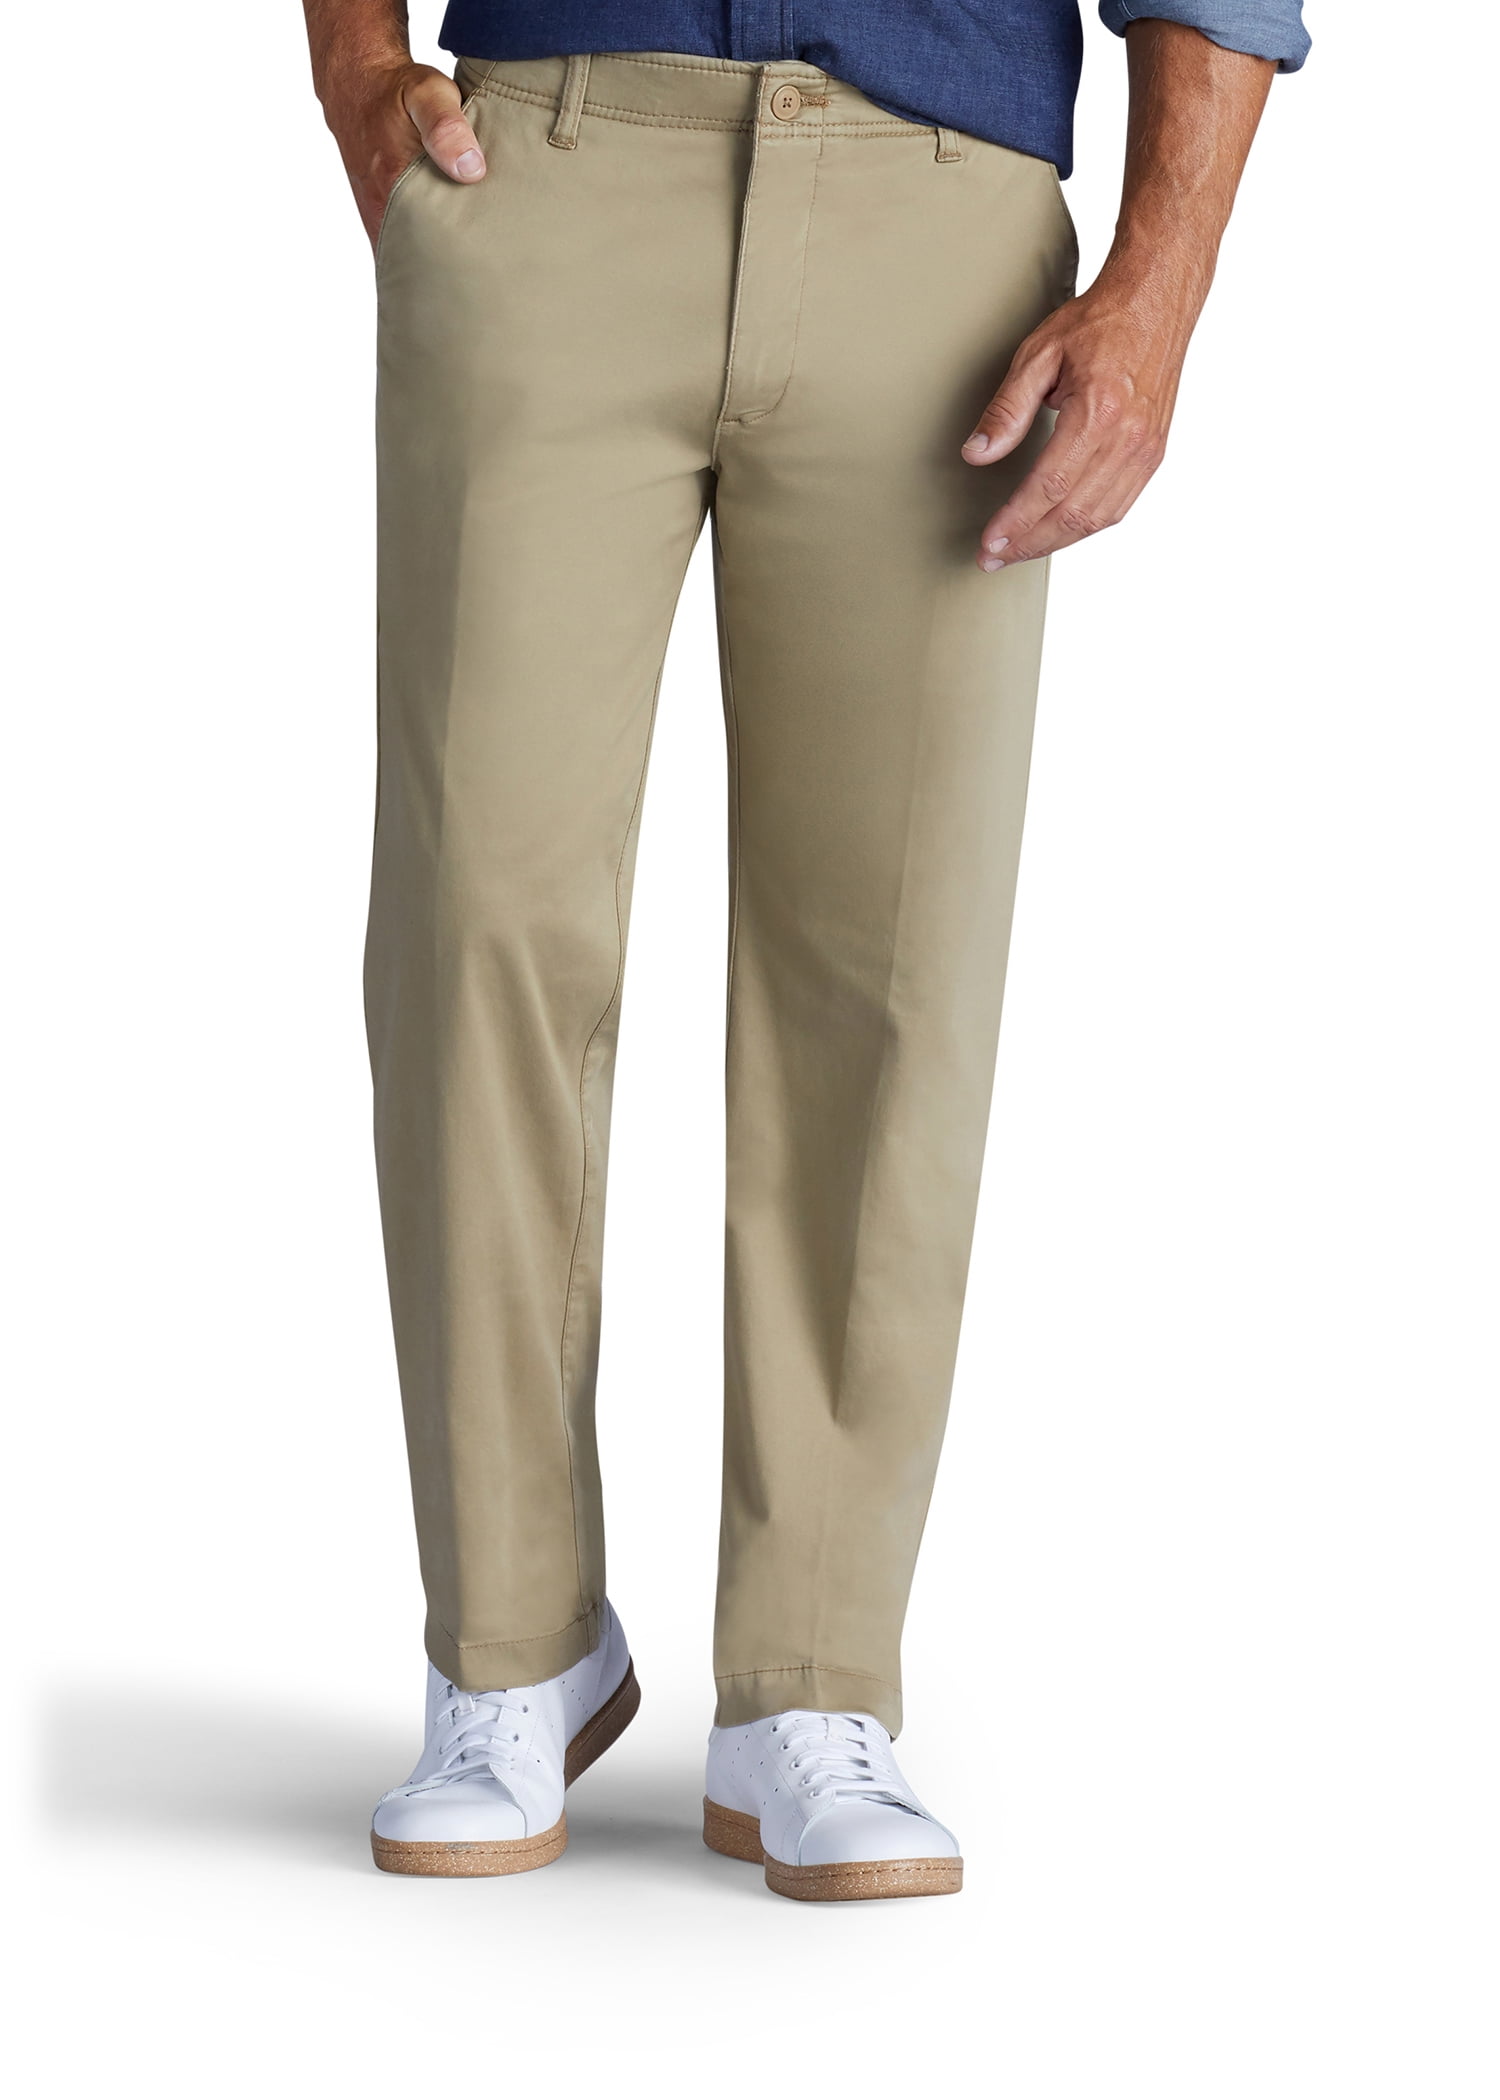 Lee Men's Premium Select Extreme Comfort Pant 